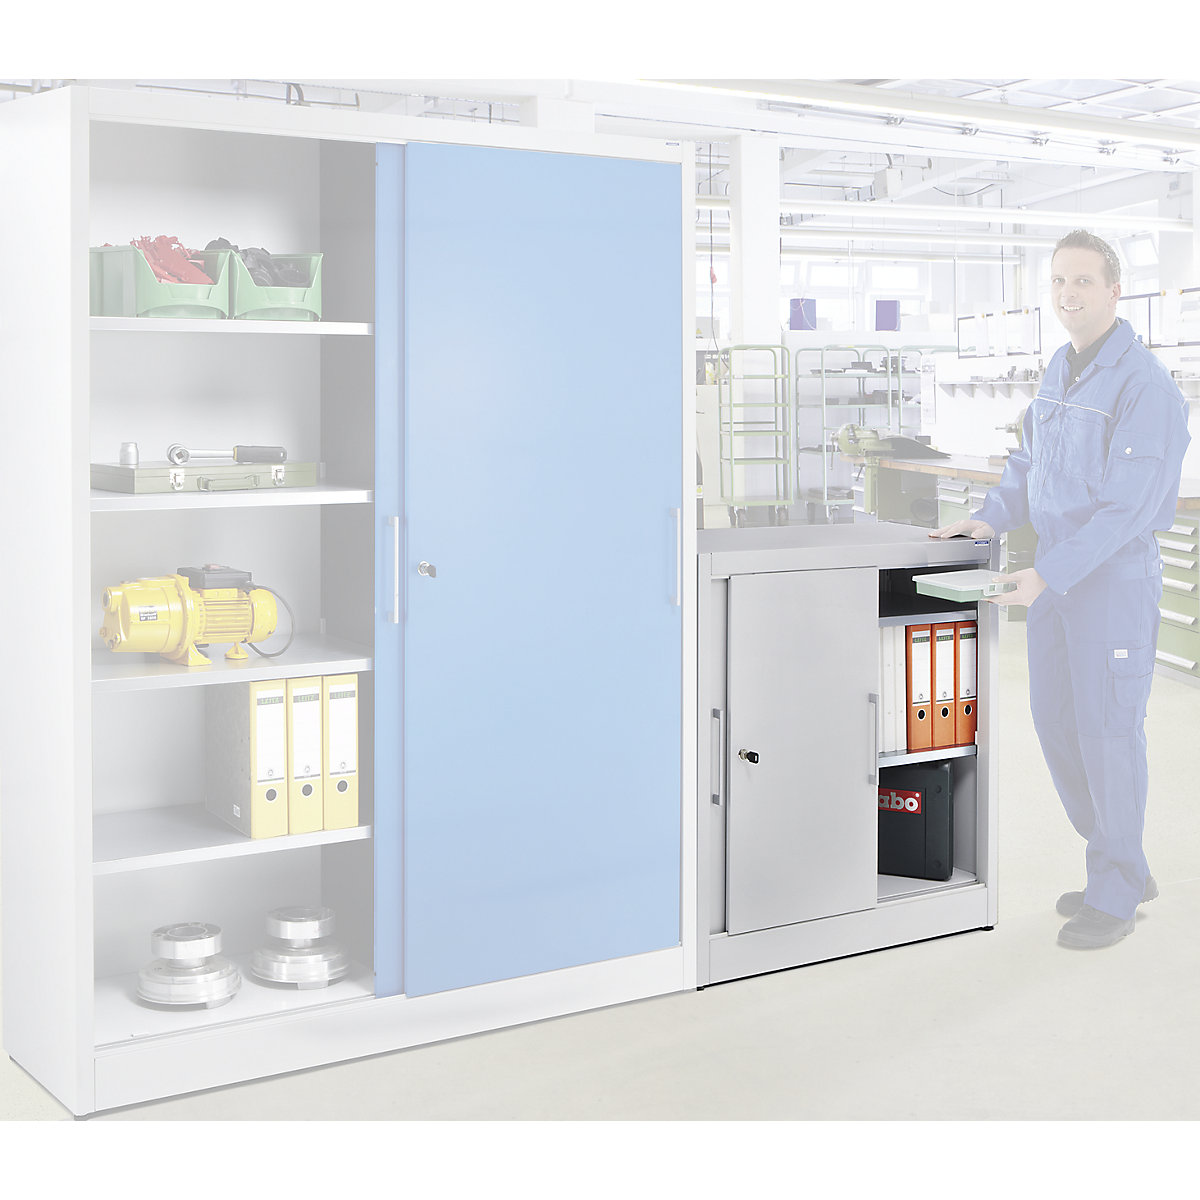 Sliding door cupboard, height 1000 mm – eurokraft pro, with 2 shelves, depth 420 mm, doors in light blue RAL 5012-1